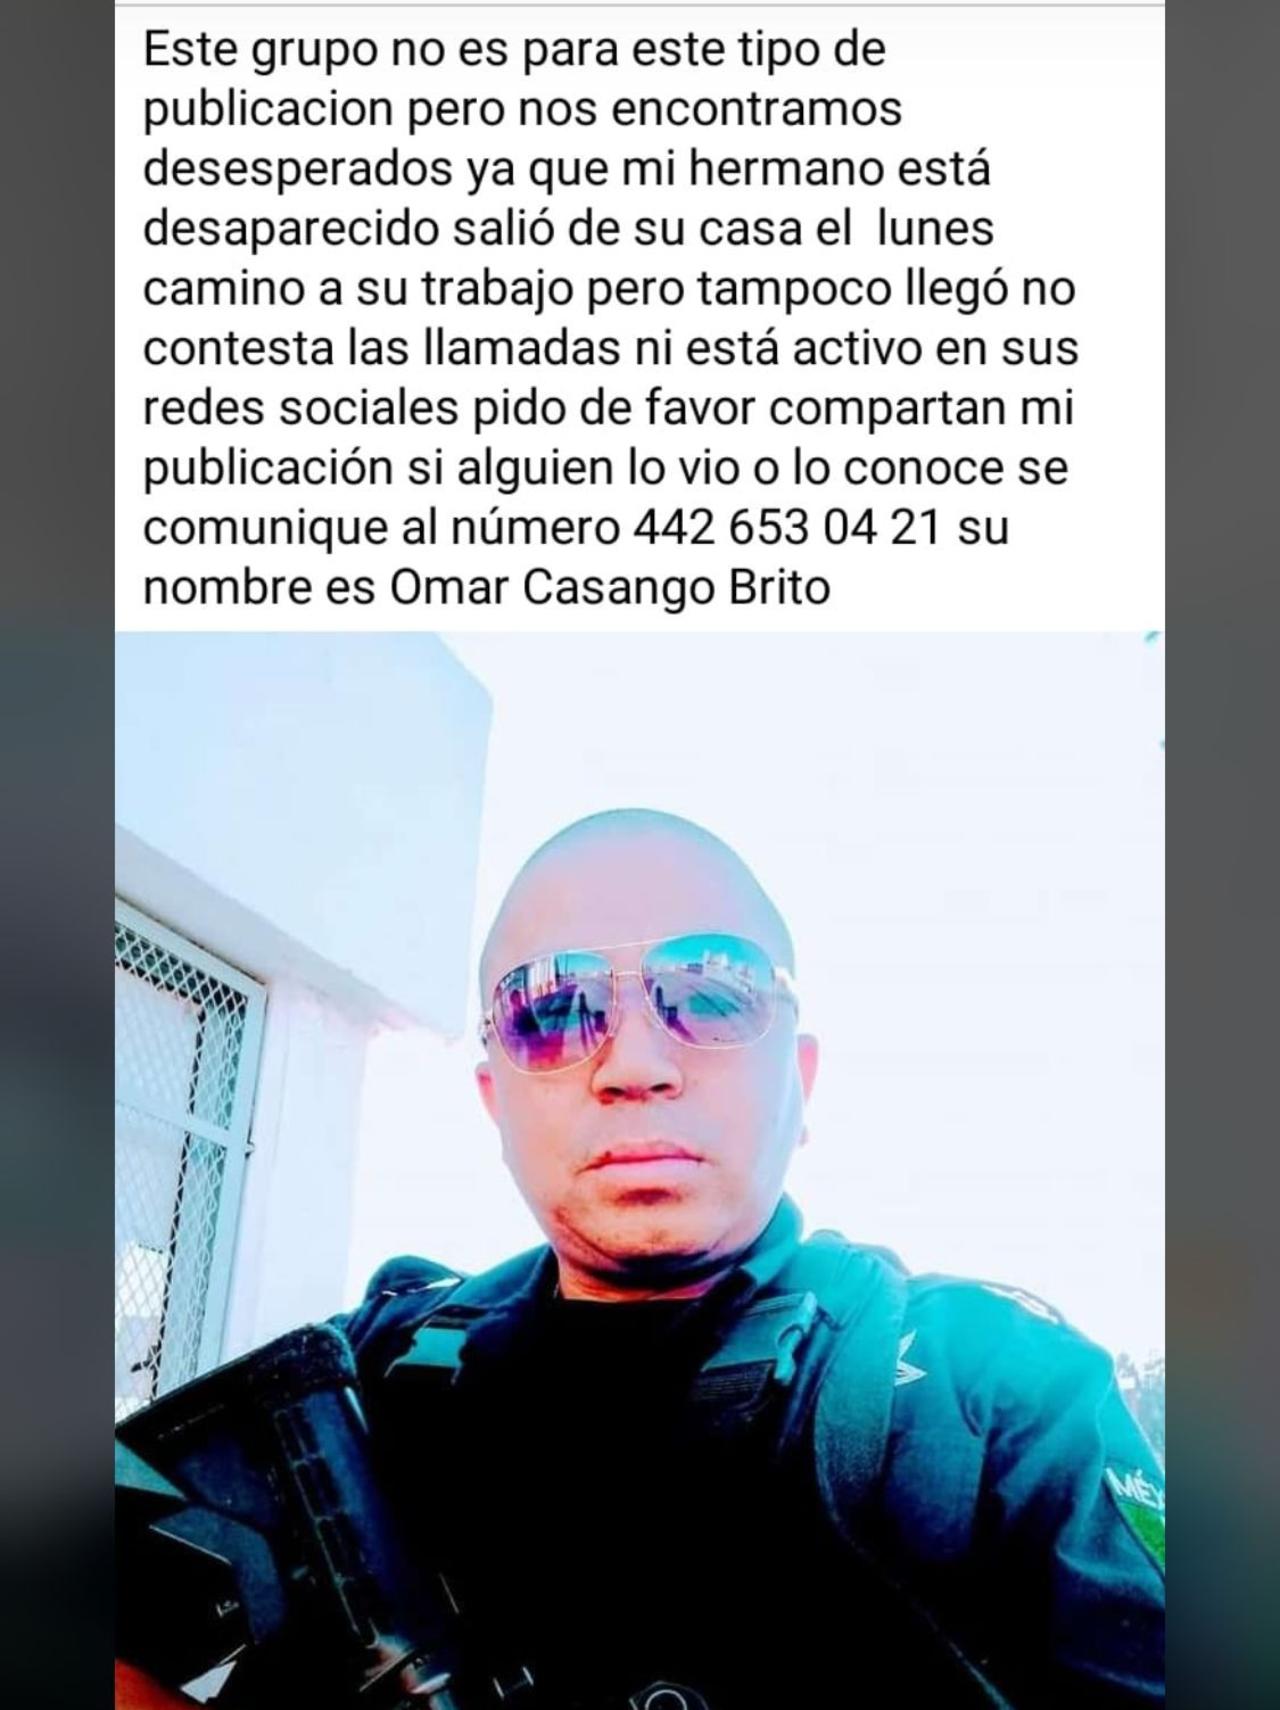 Fue a través de un grupo de Facebook que uno de sus hermanos reportó que Omar Casango Brito, había salido desde el pasado lunes de su domicilio, no obstante, desde entonces se desconocía su paradero.

